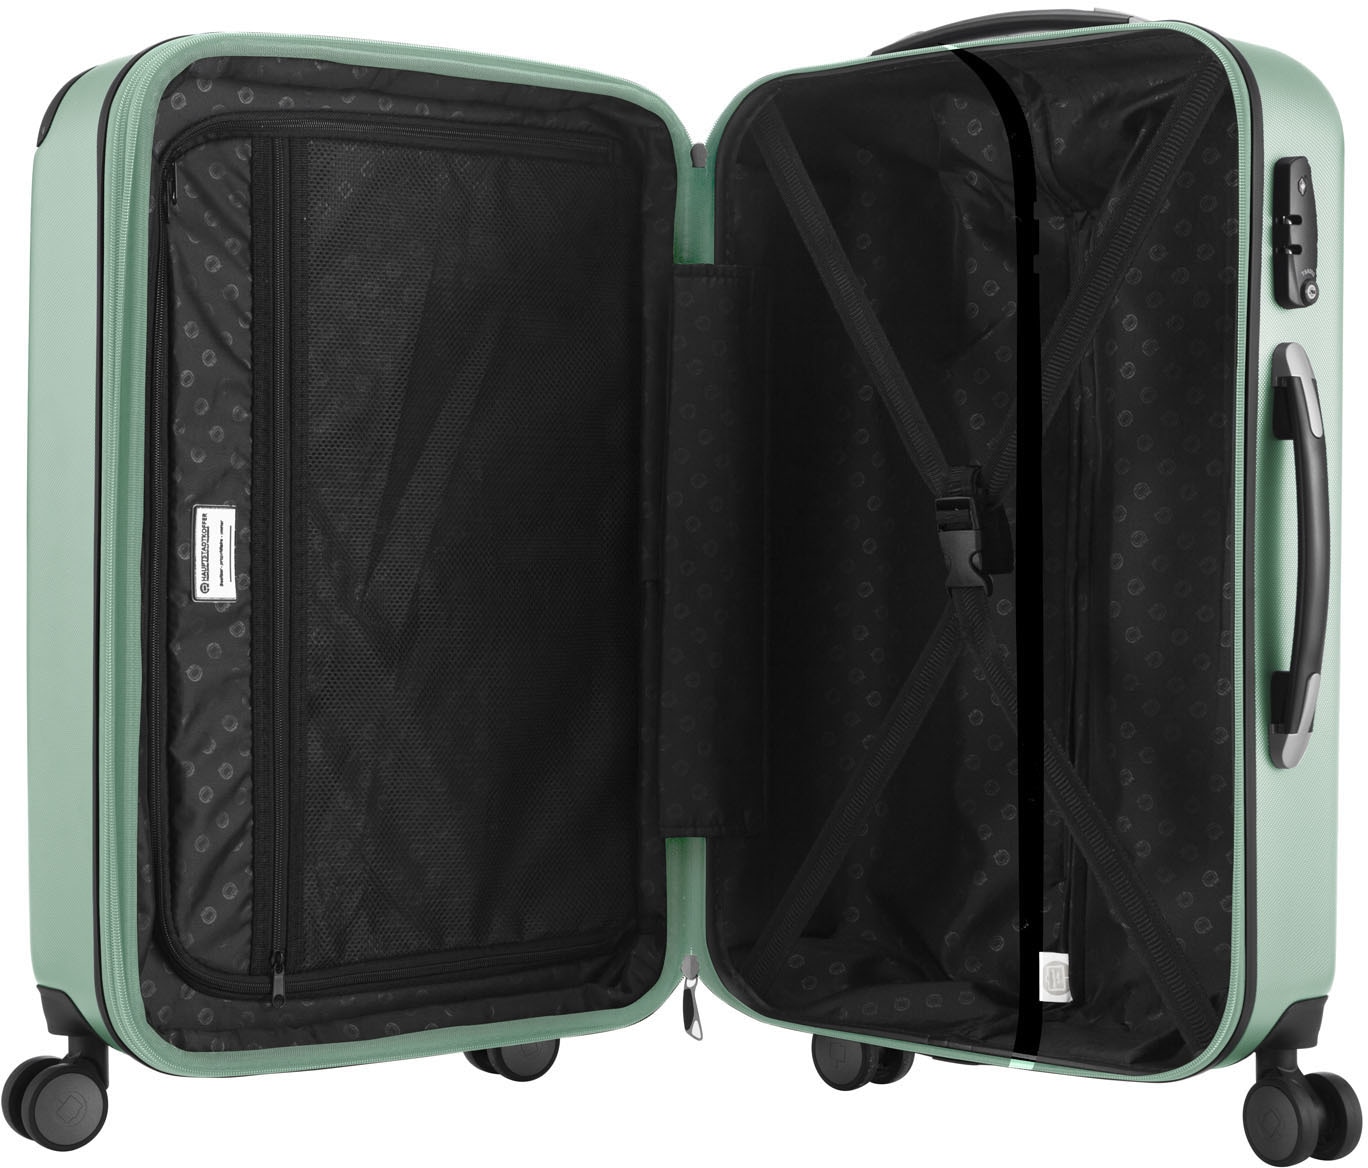 Hauptstadtkoffer Hartschalen-Trolley »Spree, 55 cm, mint«, 4 Rollen, Hartschalen-Koffer Handgepäck-Koffer TSA Schloss Volumenerweiterung